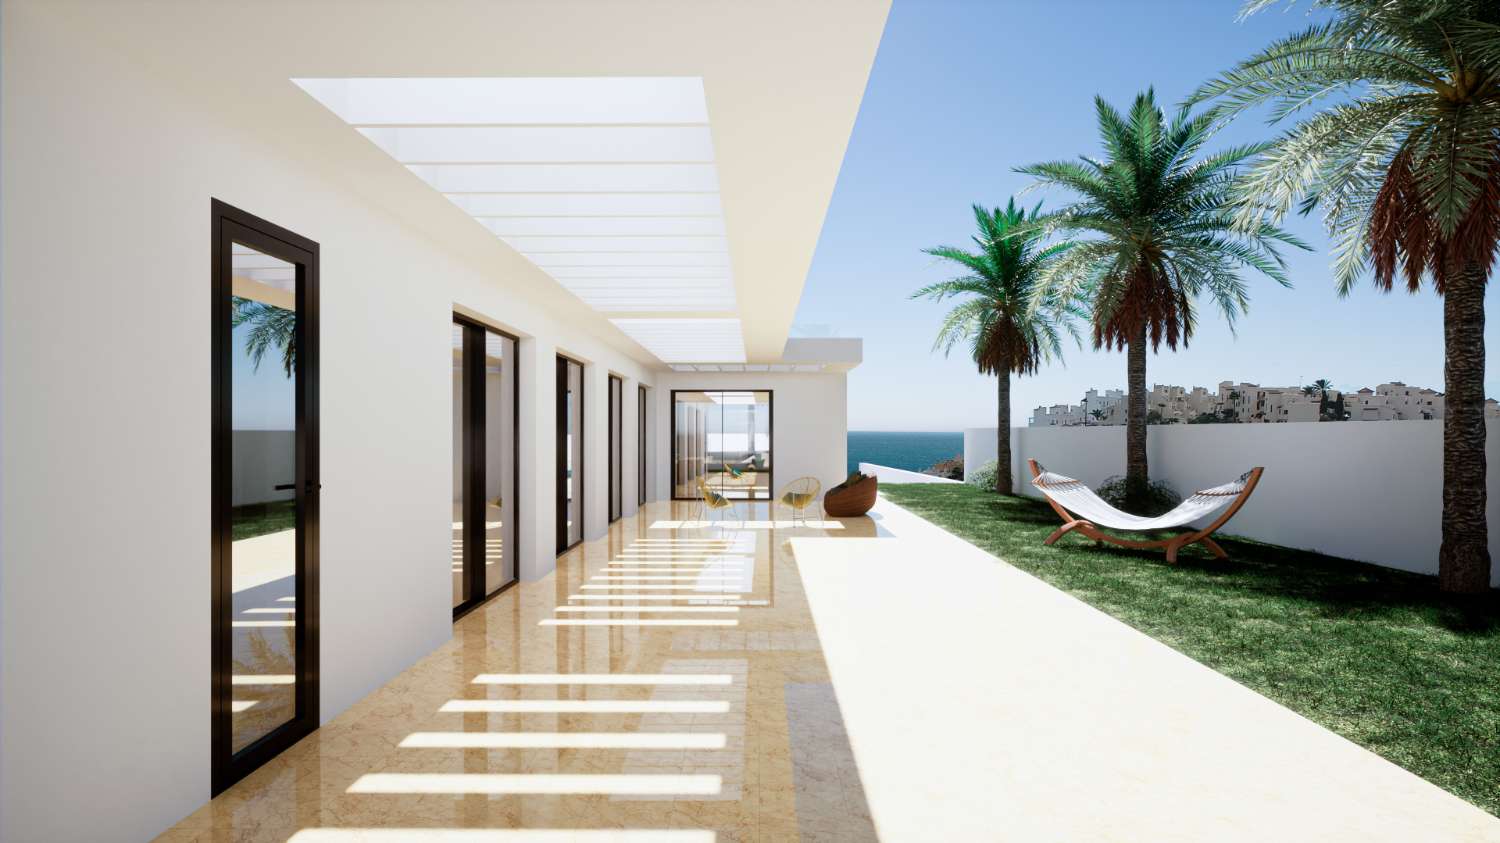 Villa de un nivel de 208 m2 sobre una parcela de 982 m2. Preciosas vistas al mar. En adicionales 229 m2 de terrazas.